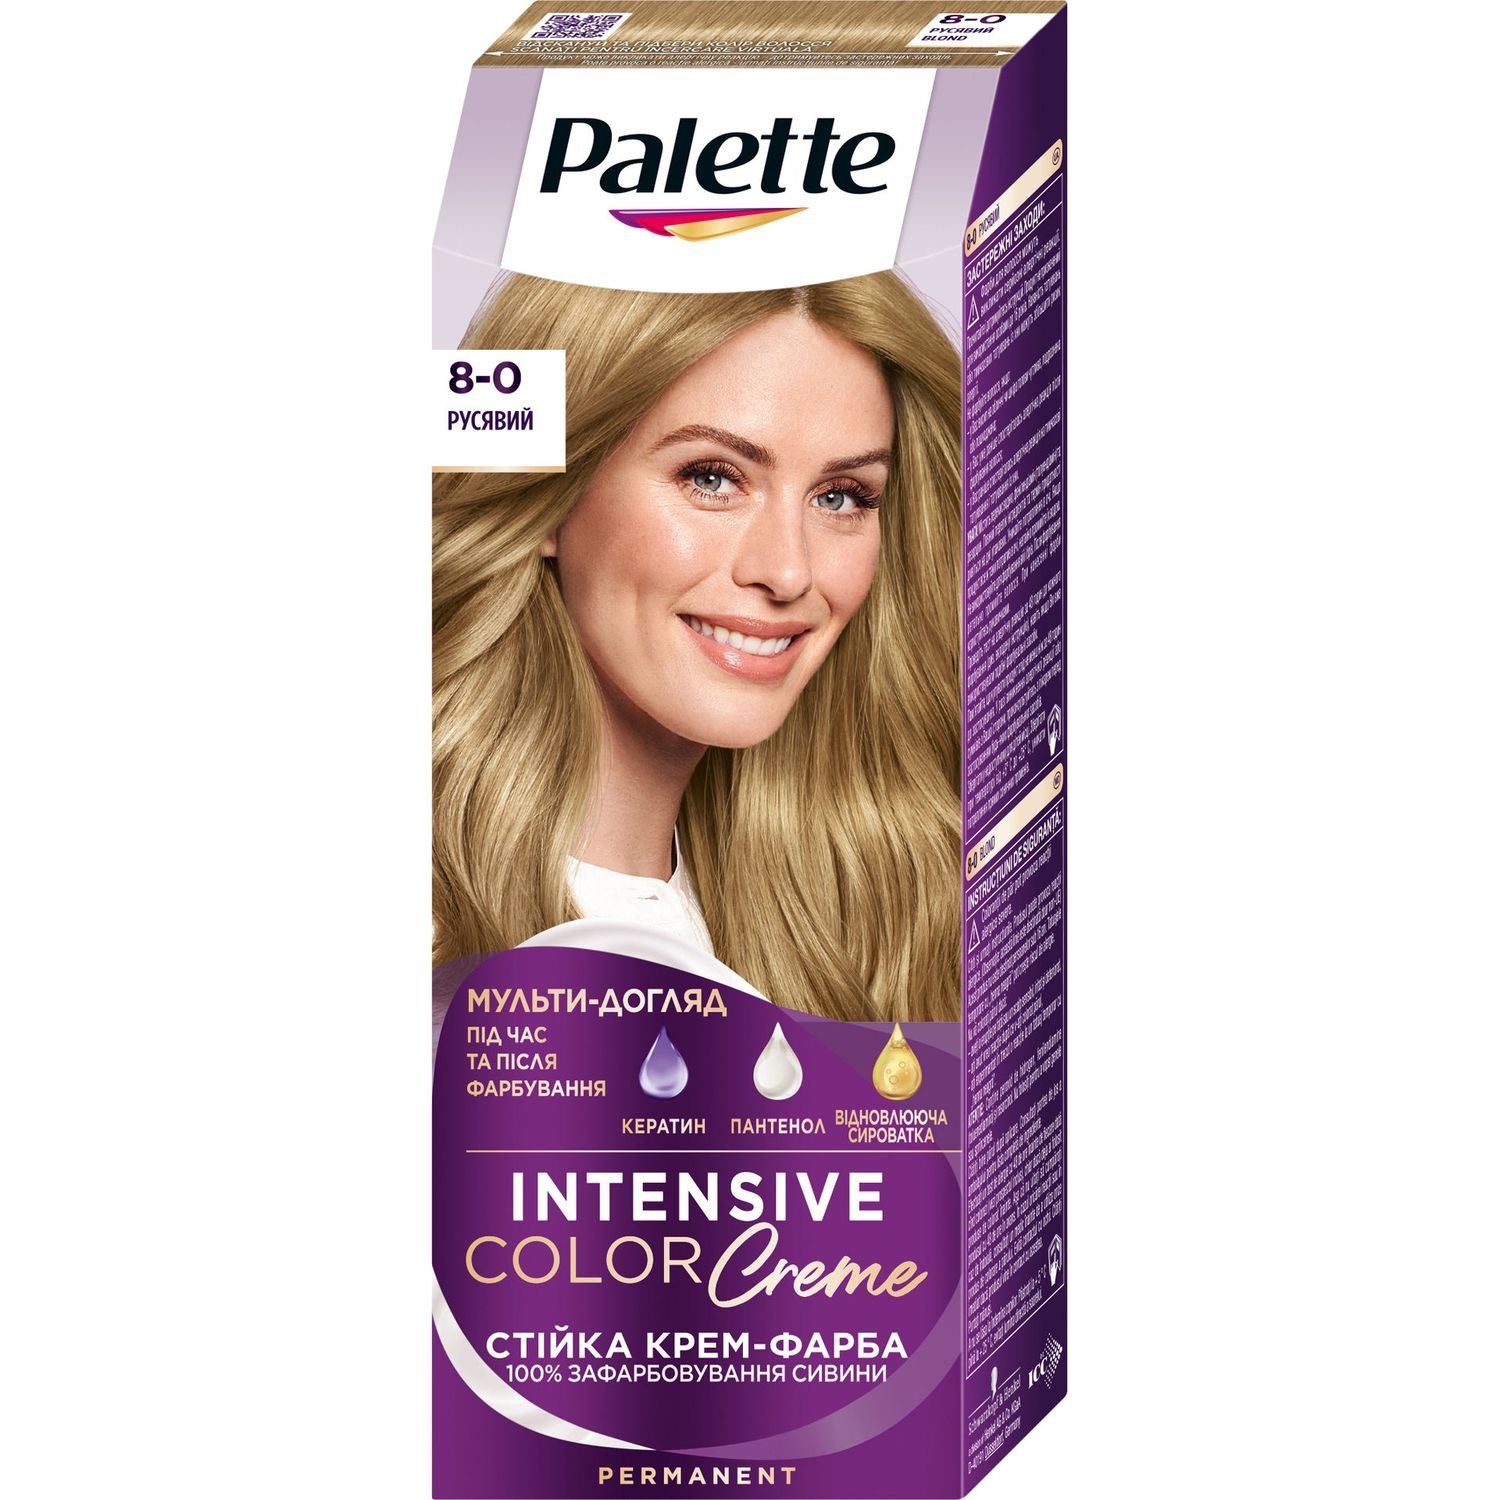 Фарба для волосся Palette ICC 8-0 Русявий 110 мл - фото 1